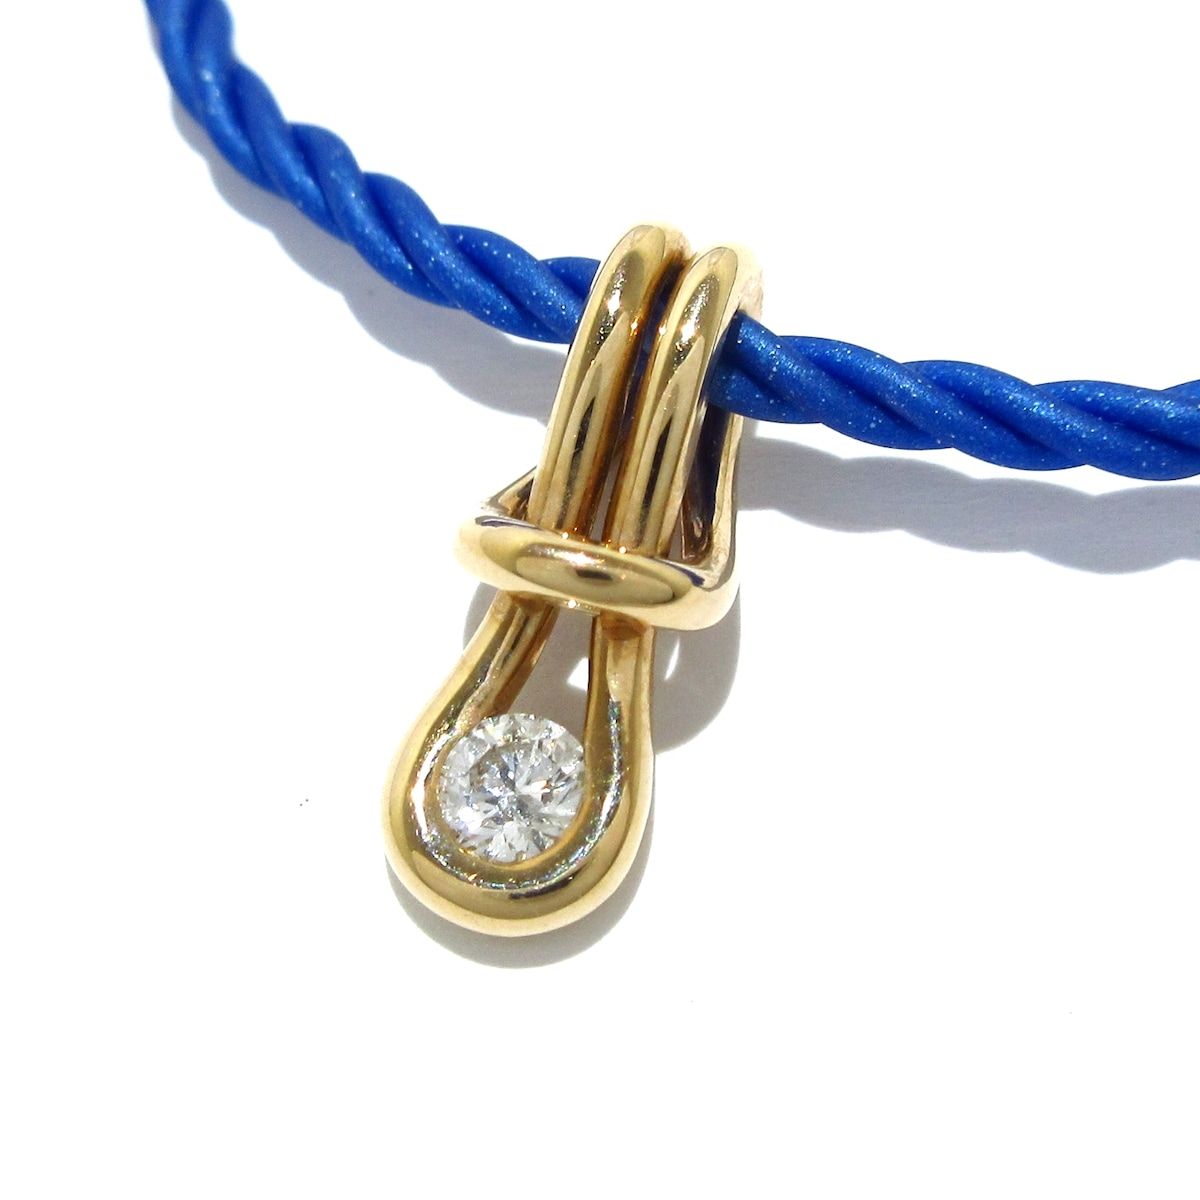 FOREVERMARK(フォーエバーマーク) ネックレス美品 - K18PG×ダイヤモンド×化学繊維 ブルー 1Pダイヤ/0.14カラット - メルカリ